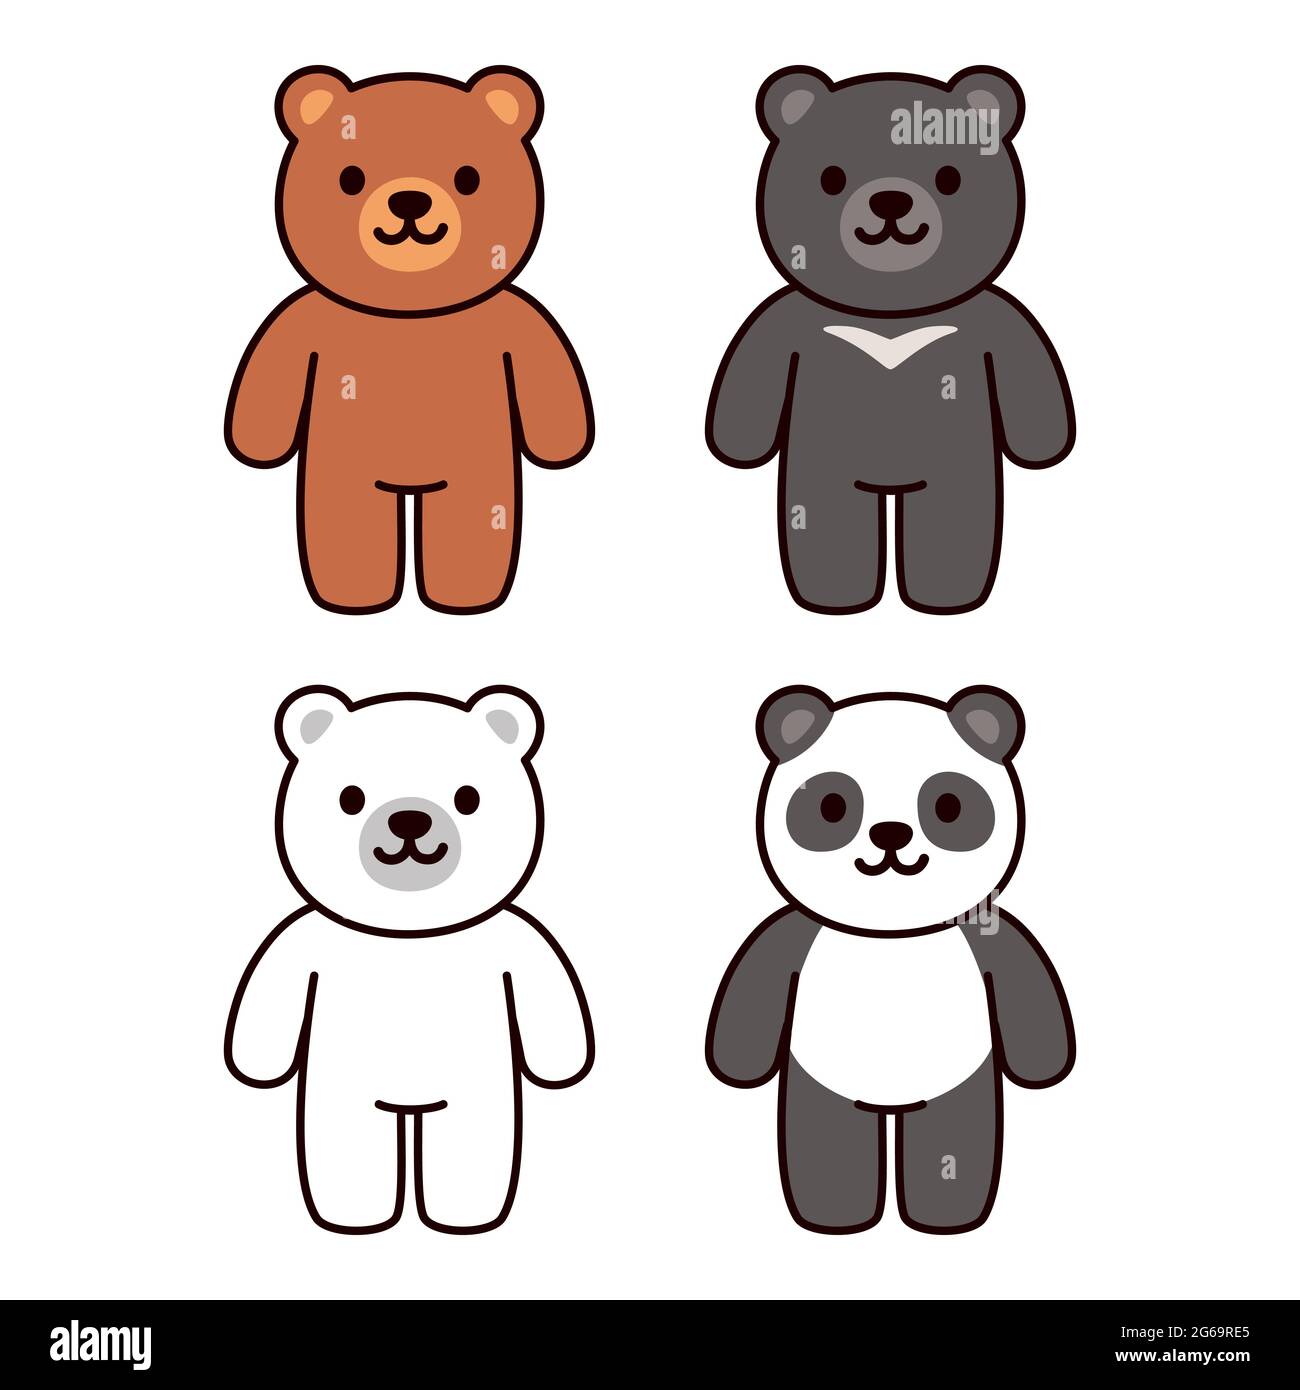 Niedliche Cartoon-Bären Set: Braun, schwarz, weiß und Pandabär. Kawaii-Zeichenvektordarstellung. Stock Vektor